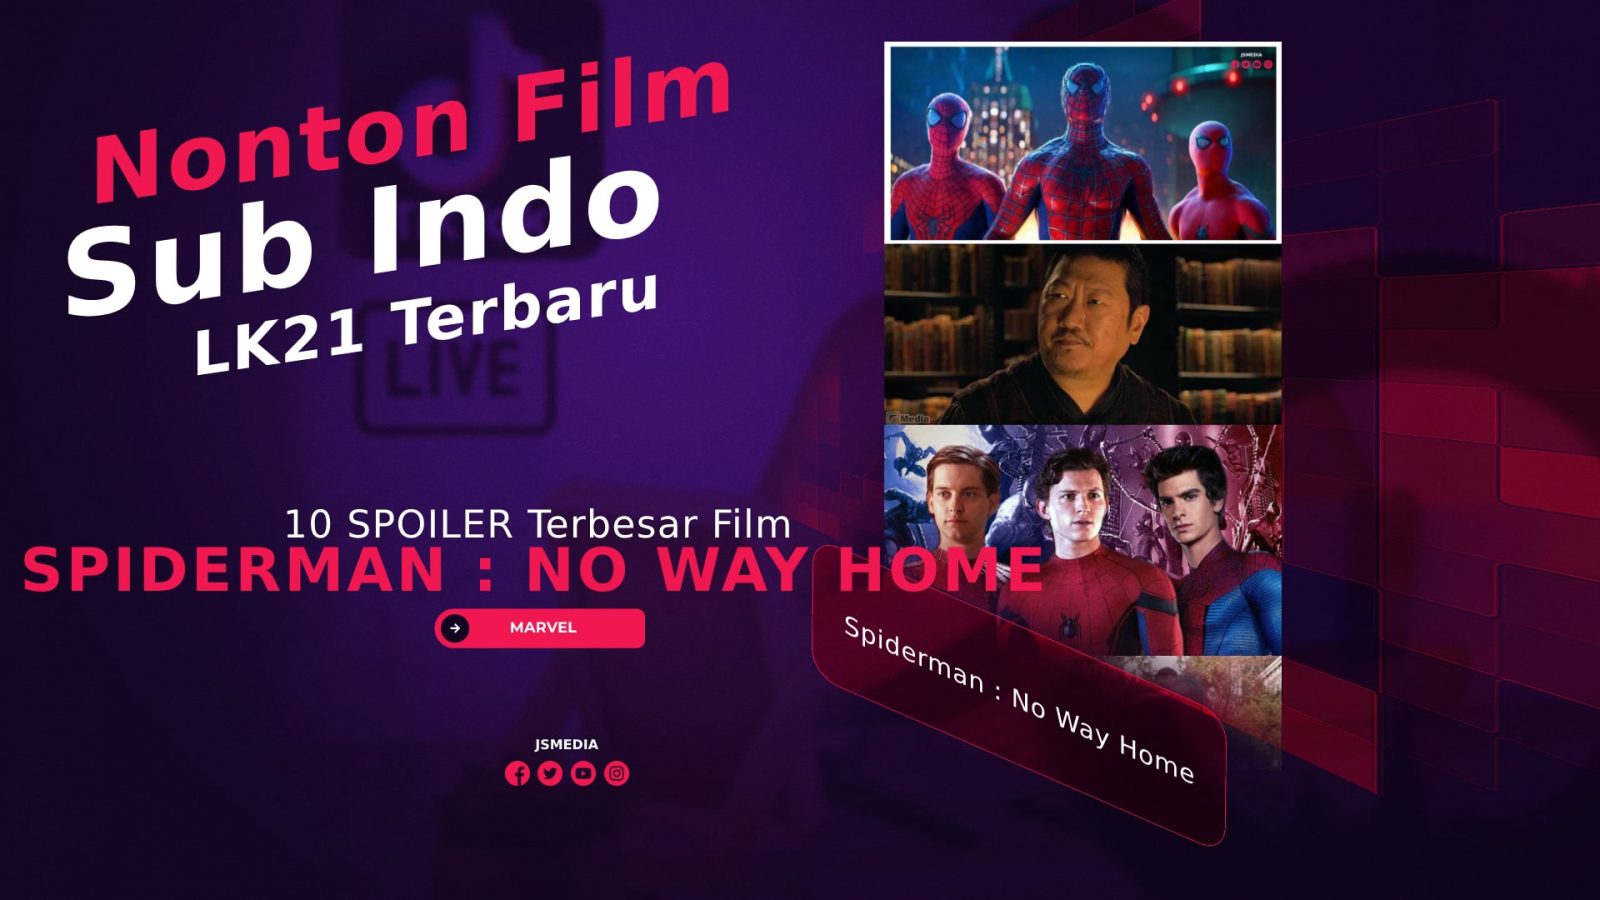 10 SPOILER Terbesar Film Spiderman : No Way Home